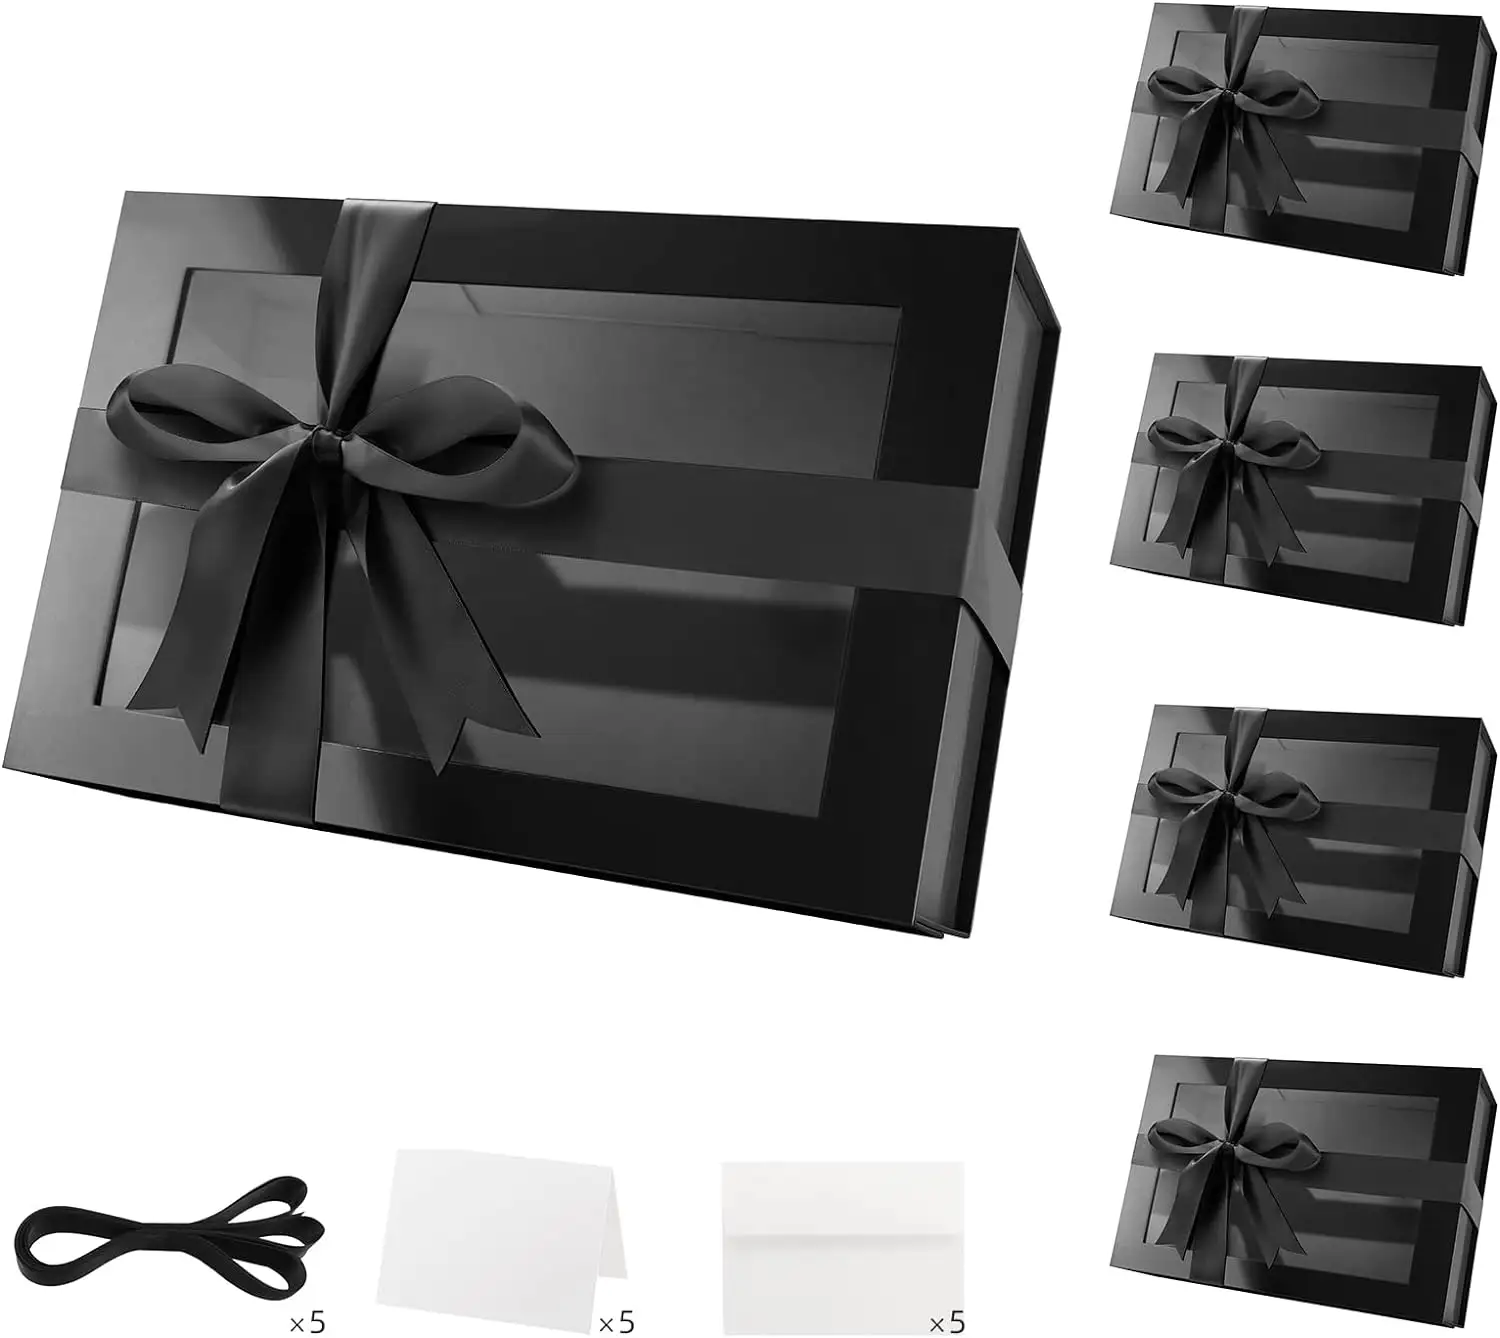 रिबन के साथ कस्टम लक्जरी परिधान पैकेजिंग फोल्डिंग बॉक्स पेपरबोर्ड कपड़े/जूते ब्लैक मैट चुंबकीय उपहार बॉक्स